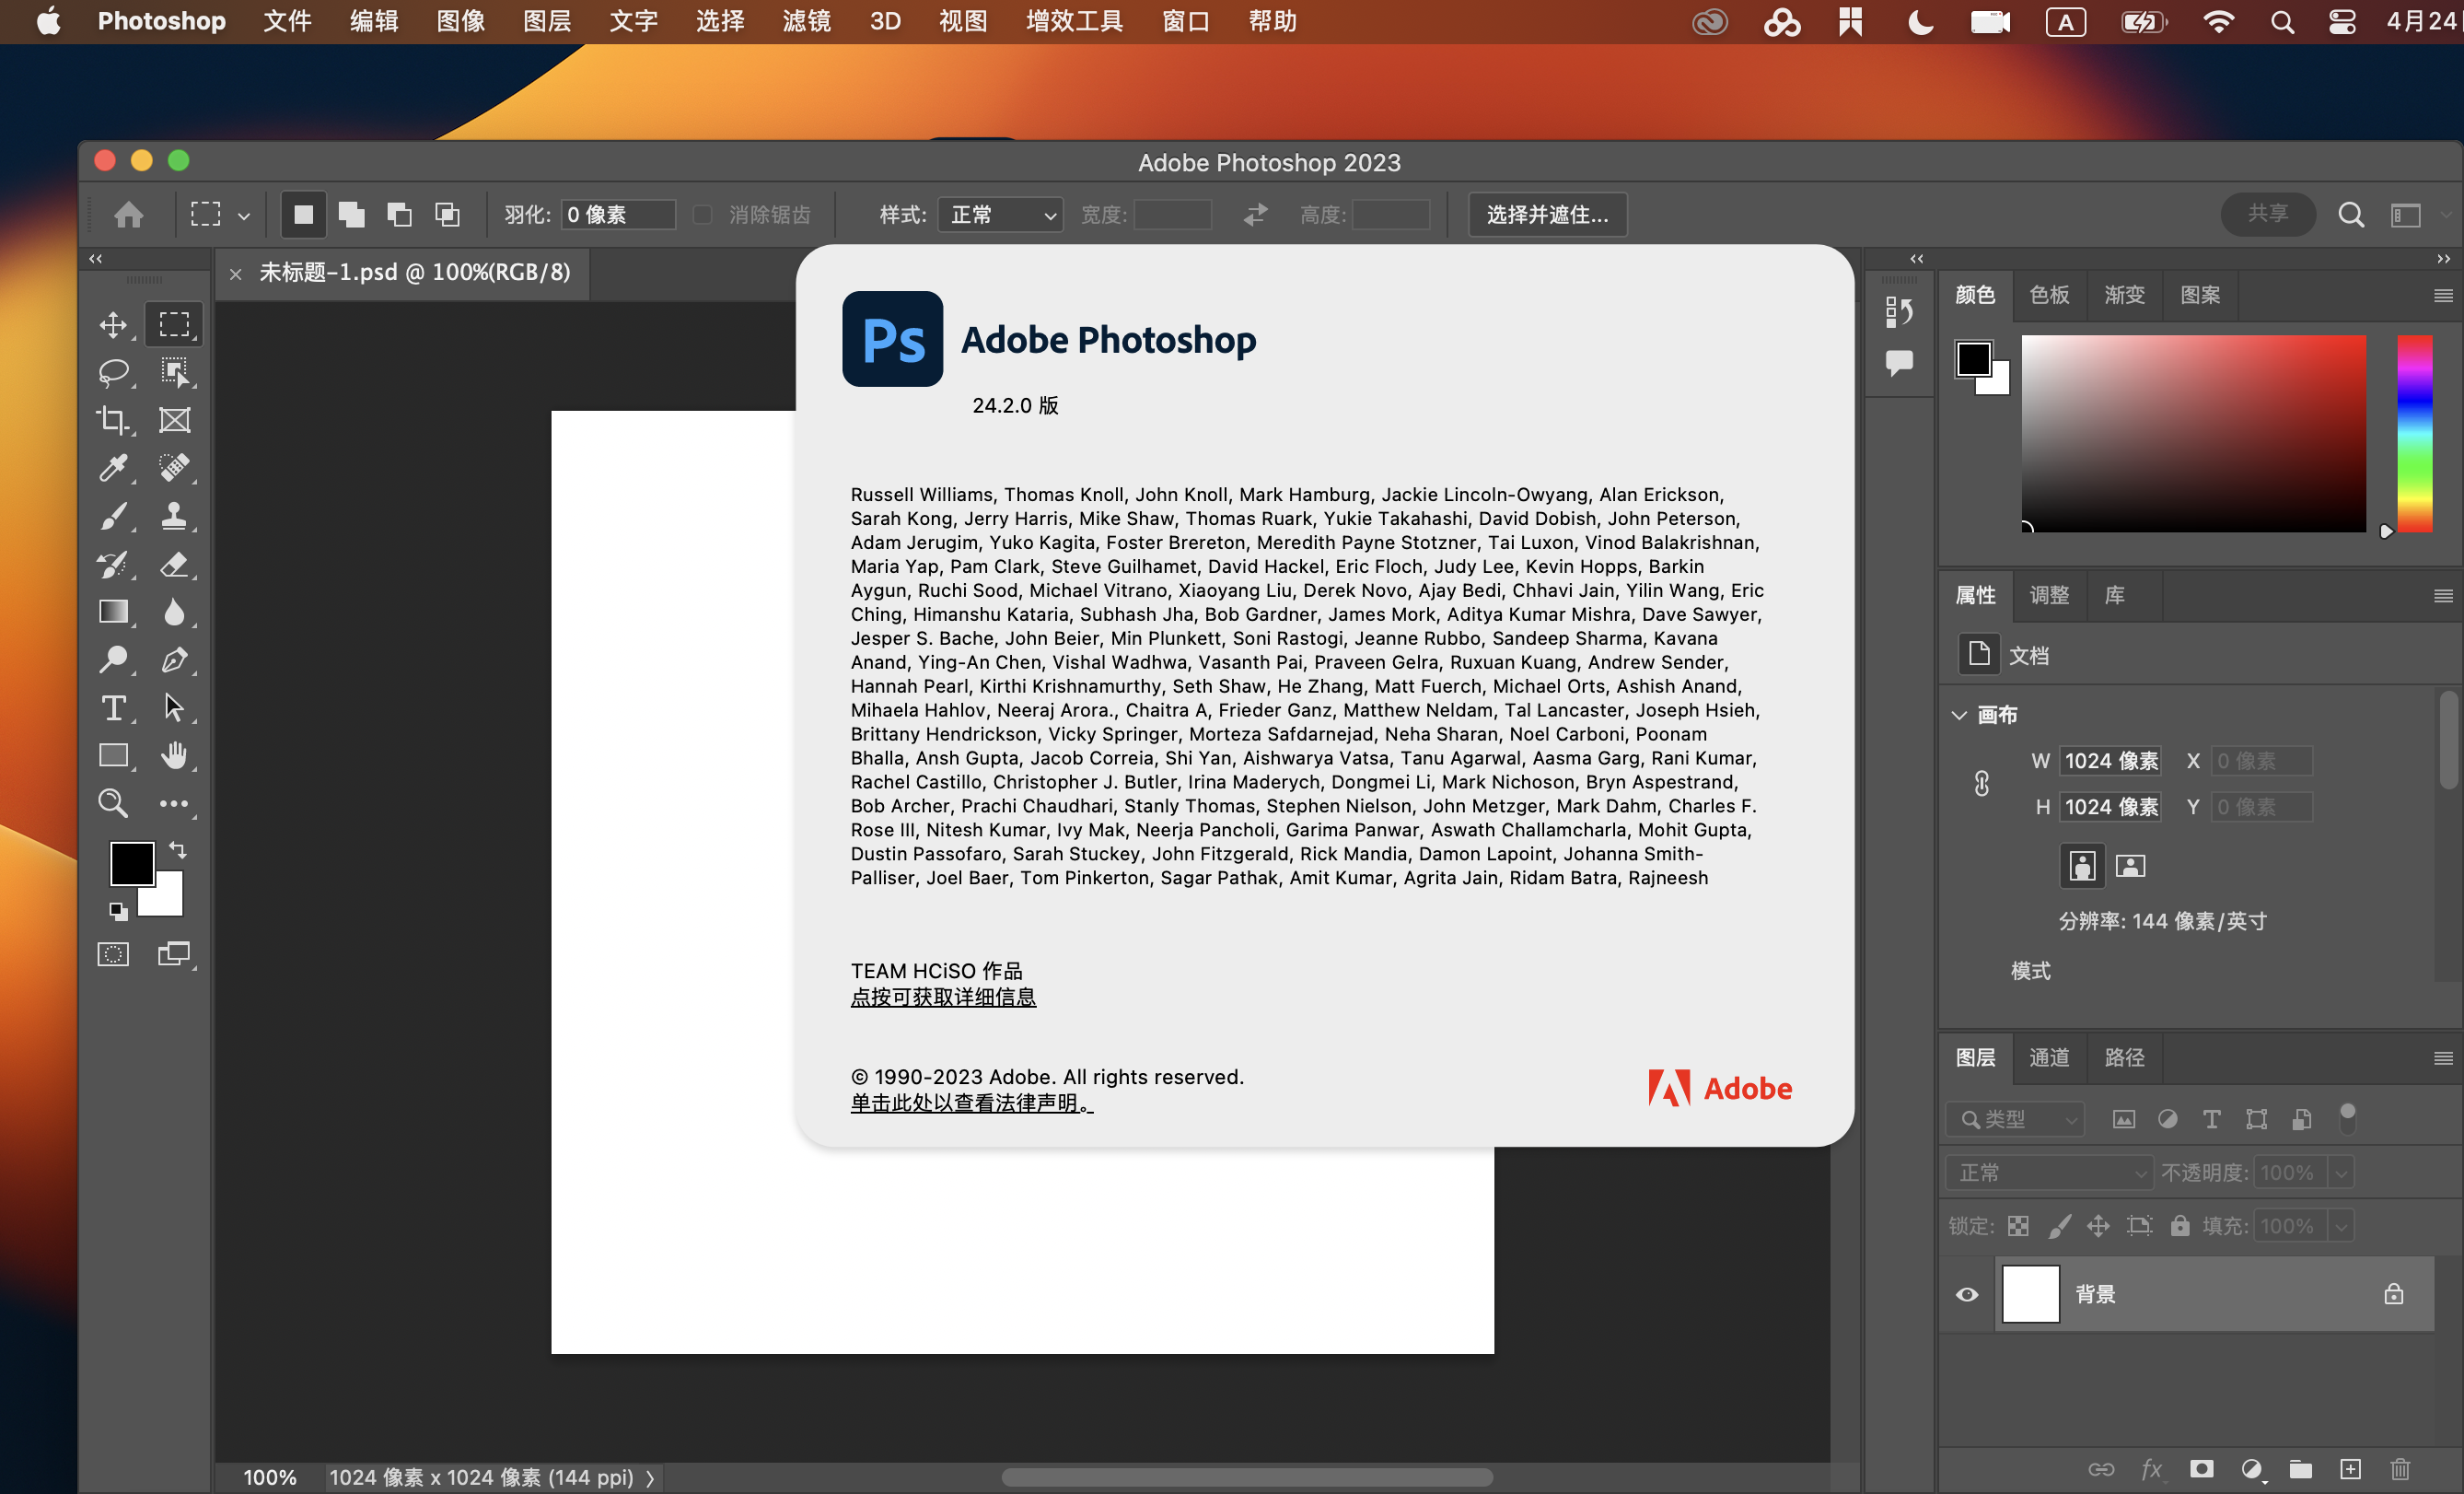 adobe photoshop 2023 v24.2 mac torrent